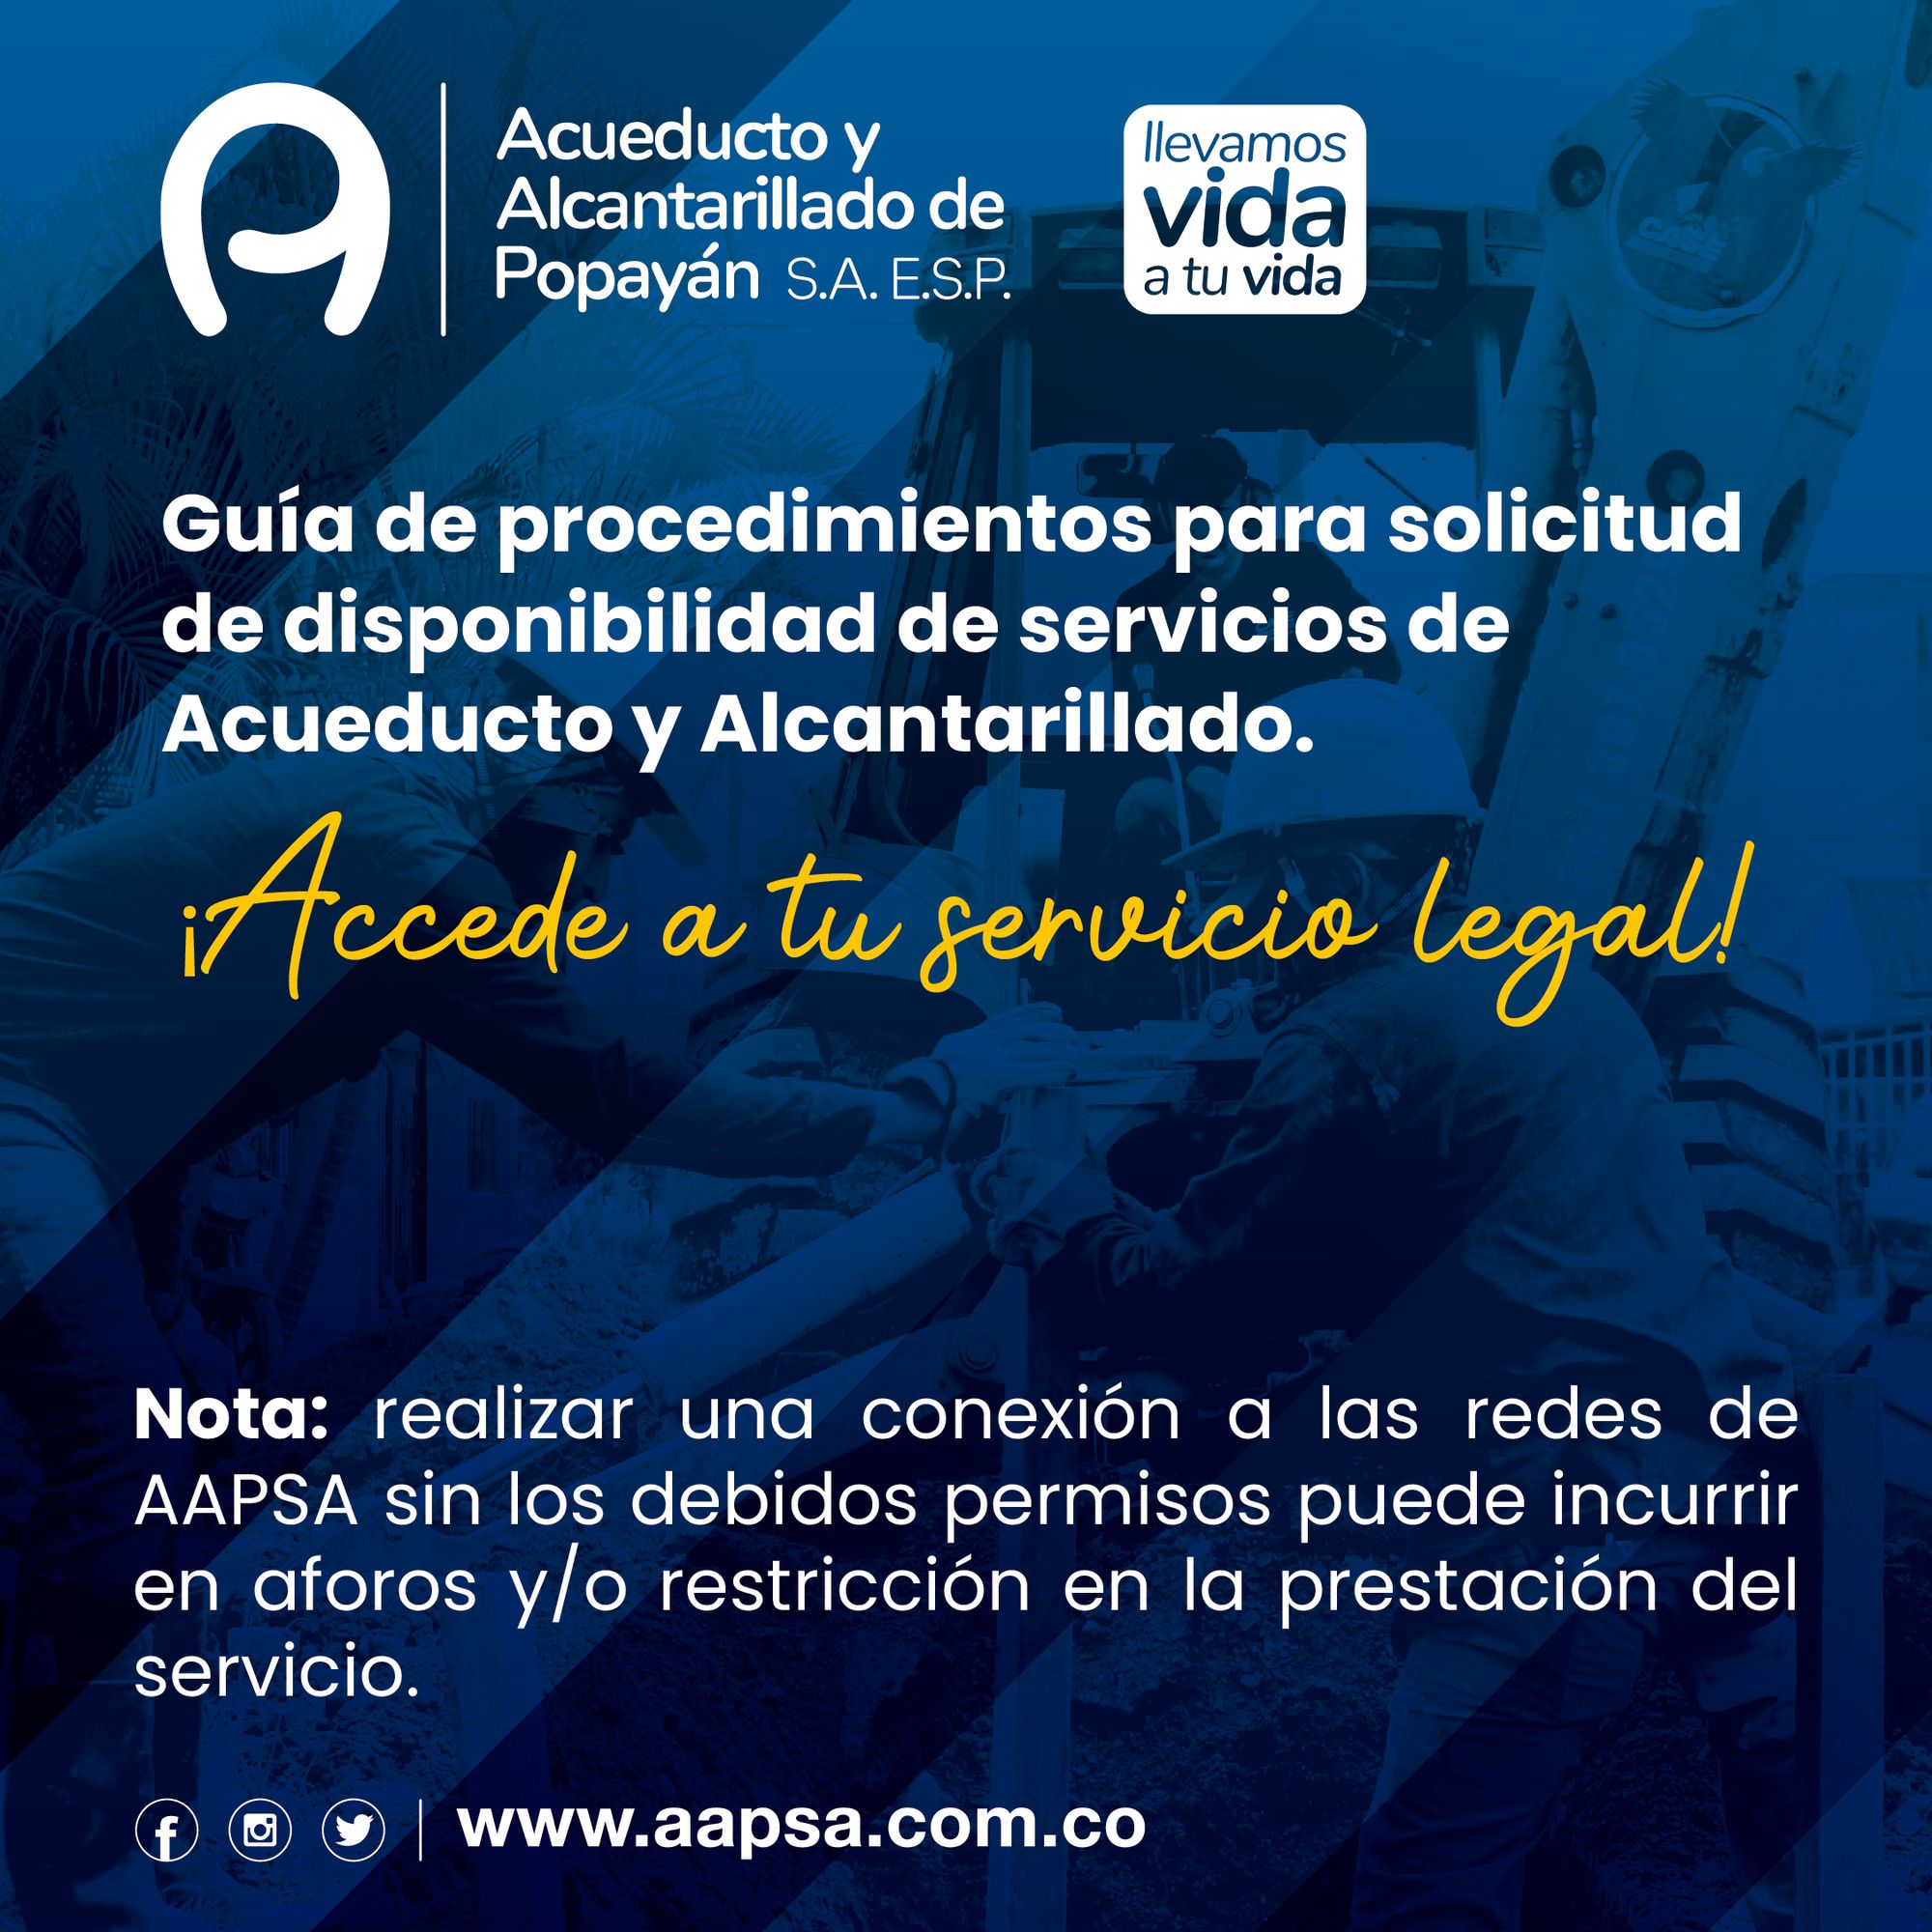 Guía de procedimientos para solicitud Disponibilidad de servicios Acueducto y Alcantarillado de Popayán S.A. E.S.P. AAPSA.